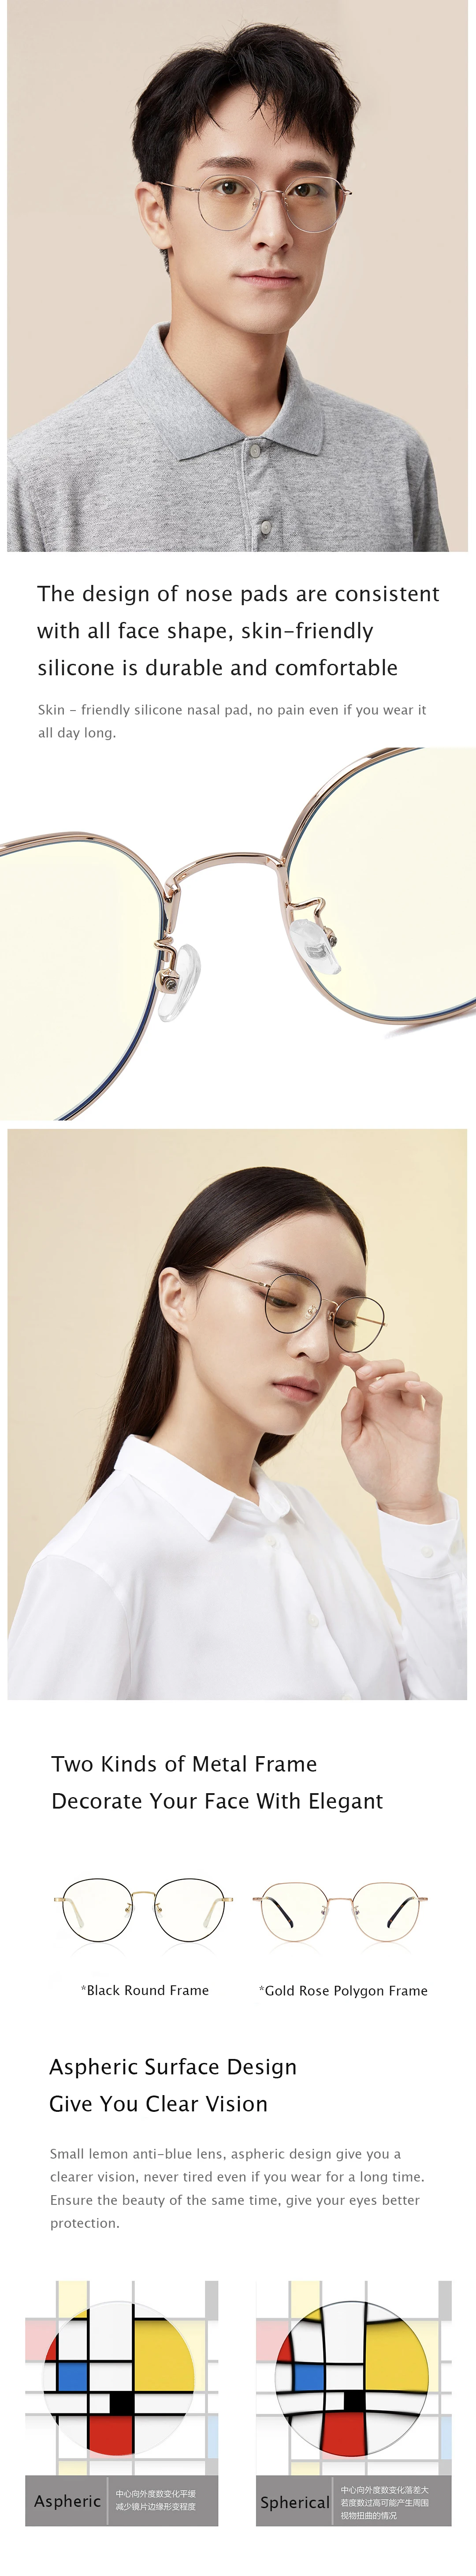 Xiaomi металлическая оправа анти синий свет УФ защита очки для мужчин и женщин компьютерные игровые очки Смола против царапин очки